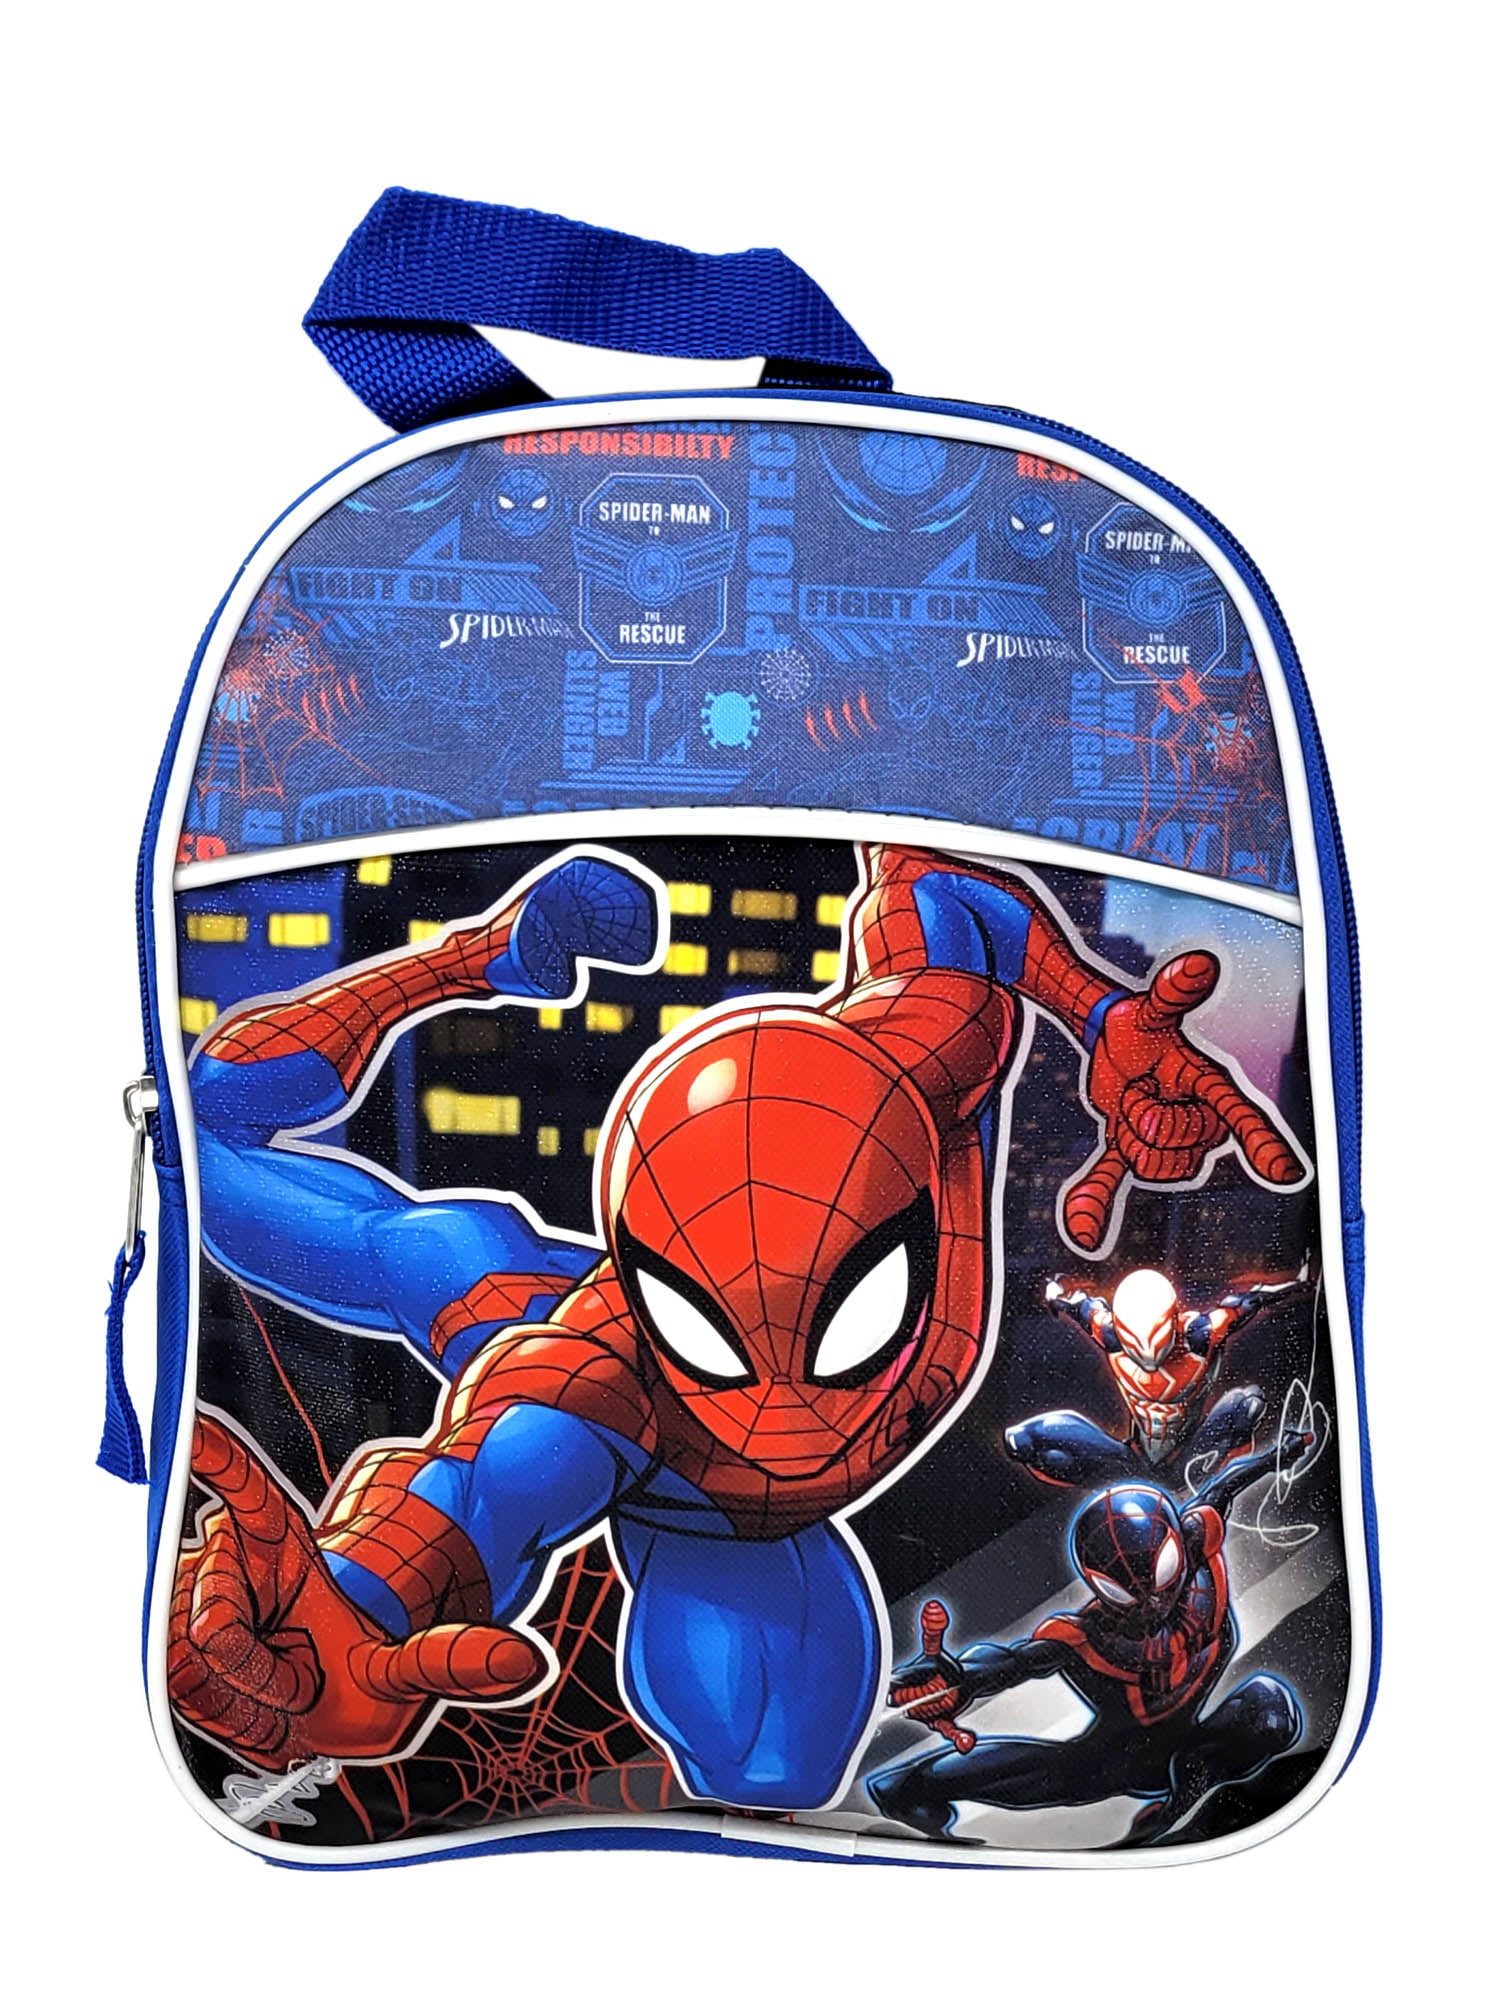 Toddler Marvel Spider-Man Mini Backpack 11" Miles Morales Spider-Man 2099